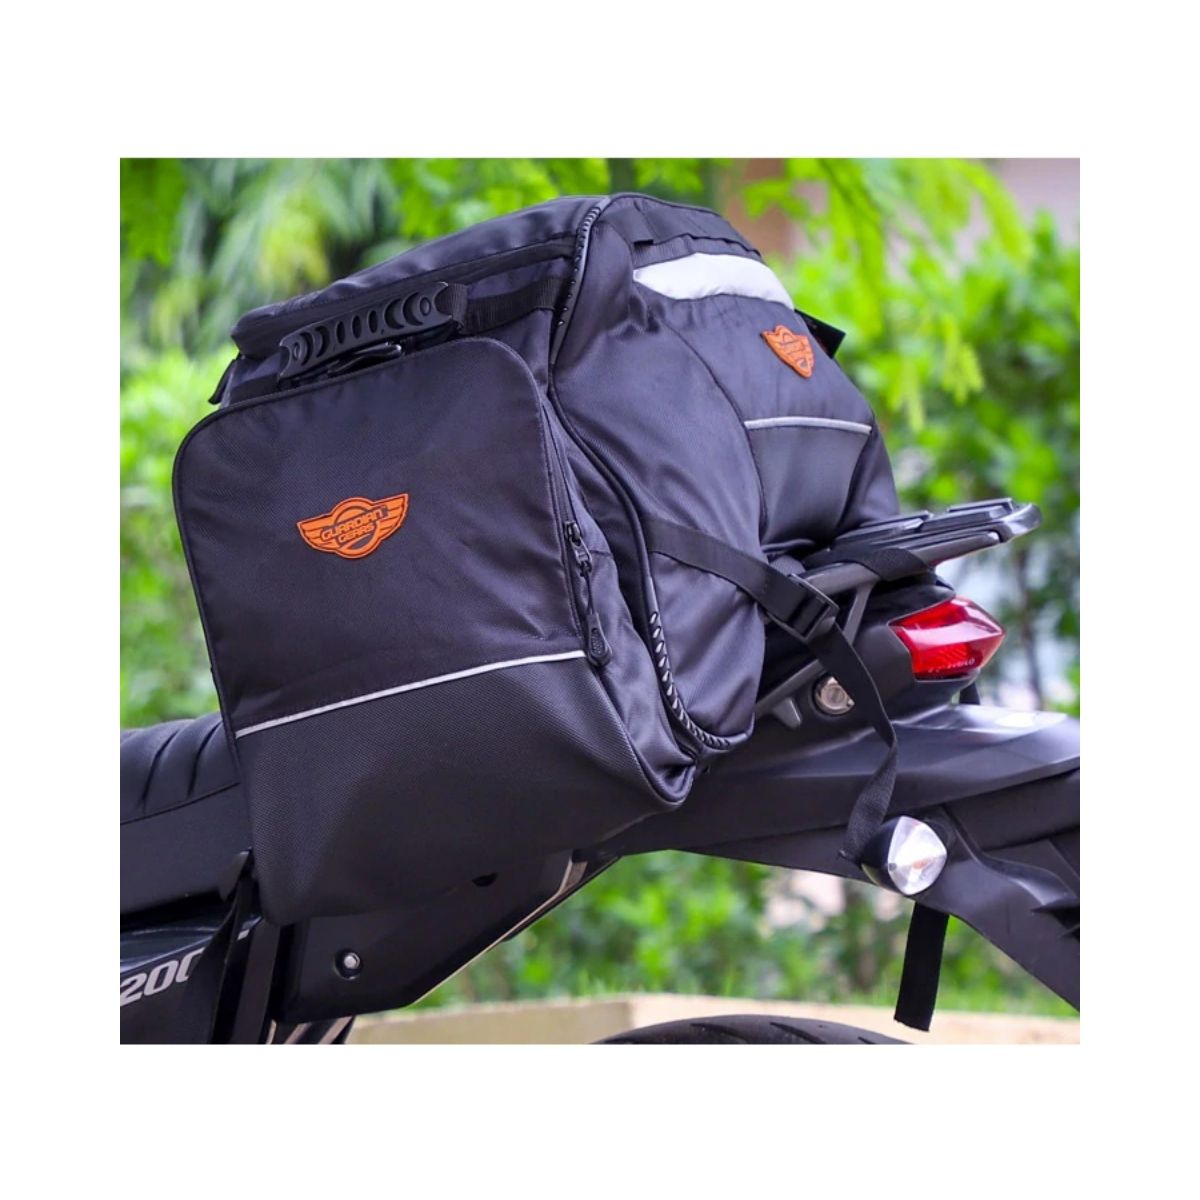 Rhino Mini 50L Tail Bag with Rain Cover & Dry Bag - Black - 14